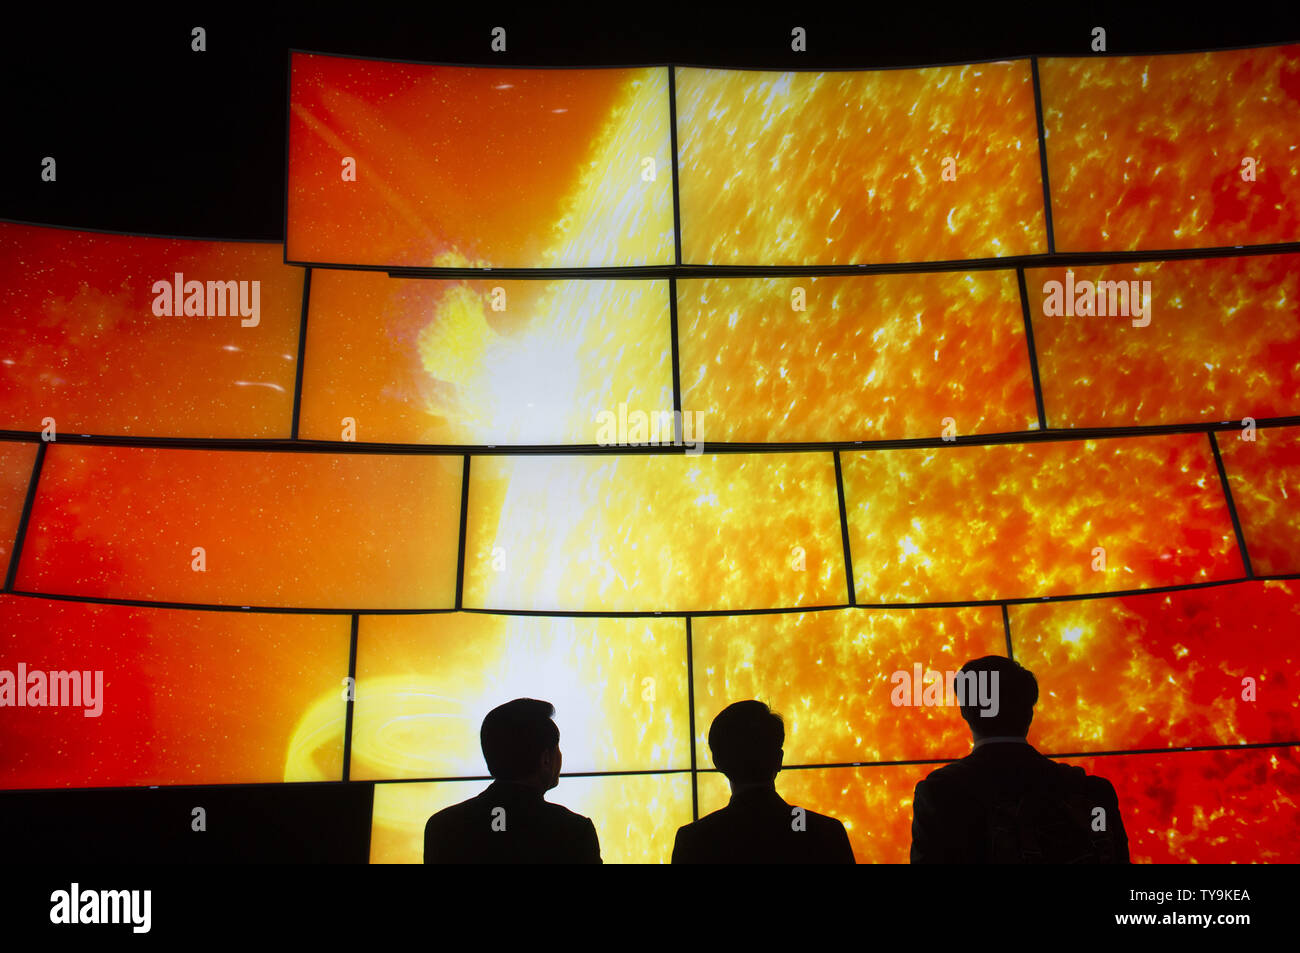 I partecipanti visualizza il Samsung SUHD TV con quantum dot Display a 2016 International CES, una fiera di elettronica di consumo, a Las Vegas, Nevada, il 6 gennaio 2016. Foto di Molly Riley/UPI Foto Stock